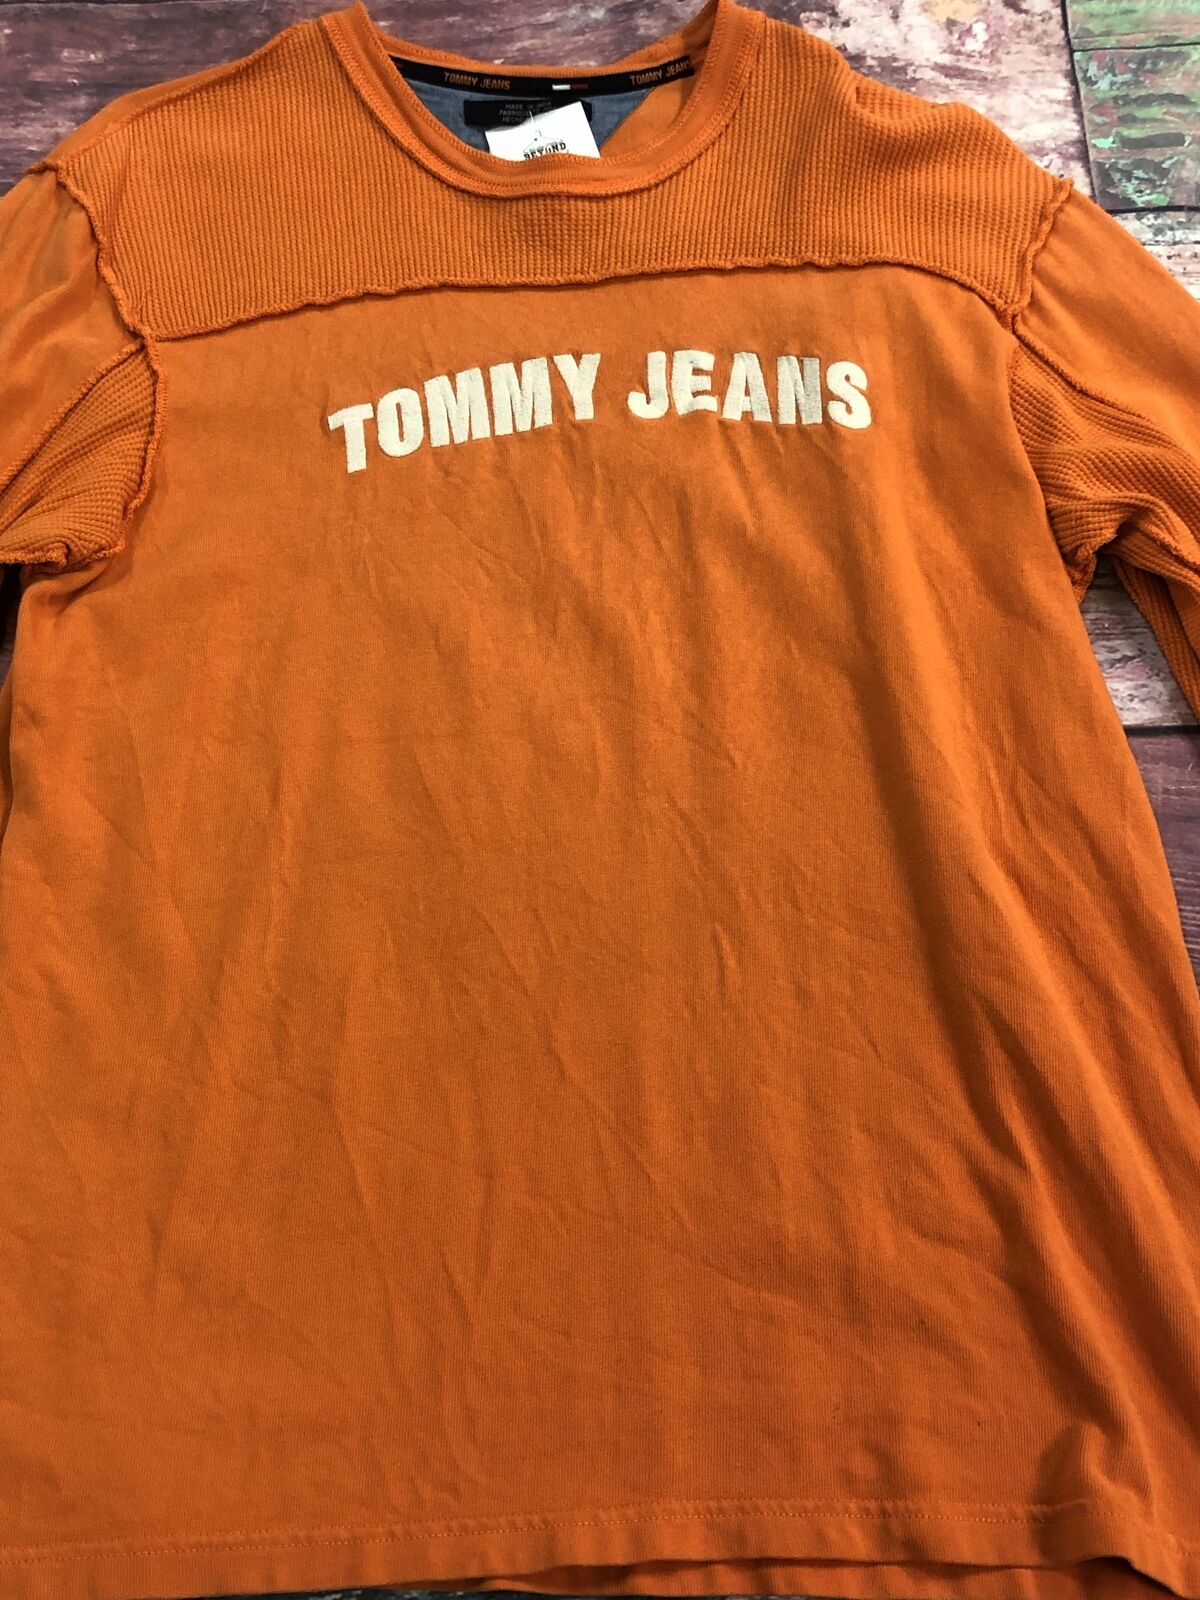 Ryd op Inspirere Vær opmærksom på Vintage Tommy Hilfiger Jeans Spell Out Long Sleeve Orange T-Shirt Men -  beyond exchange